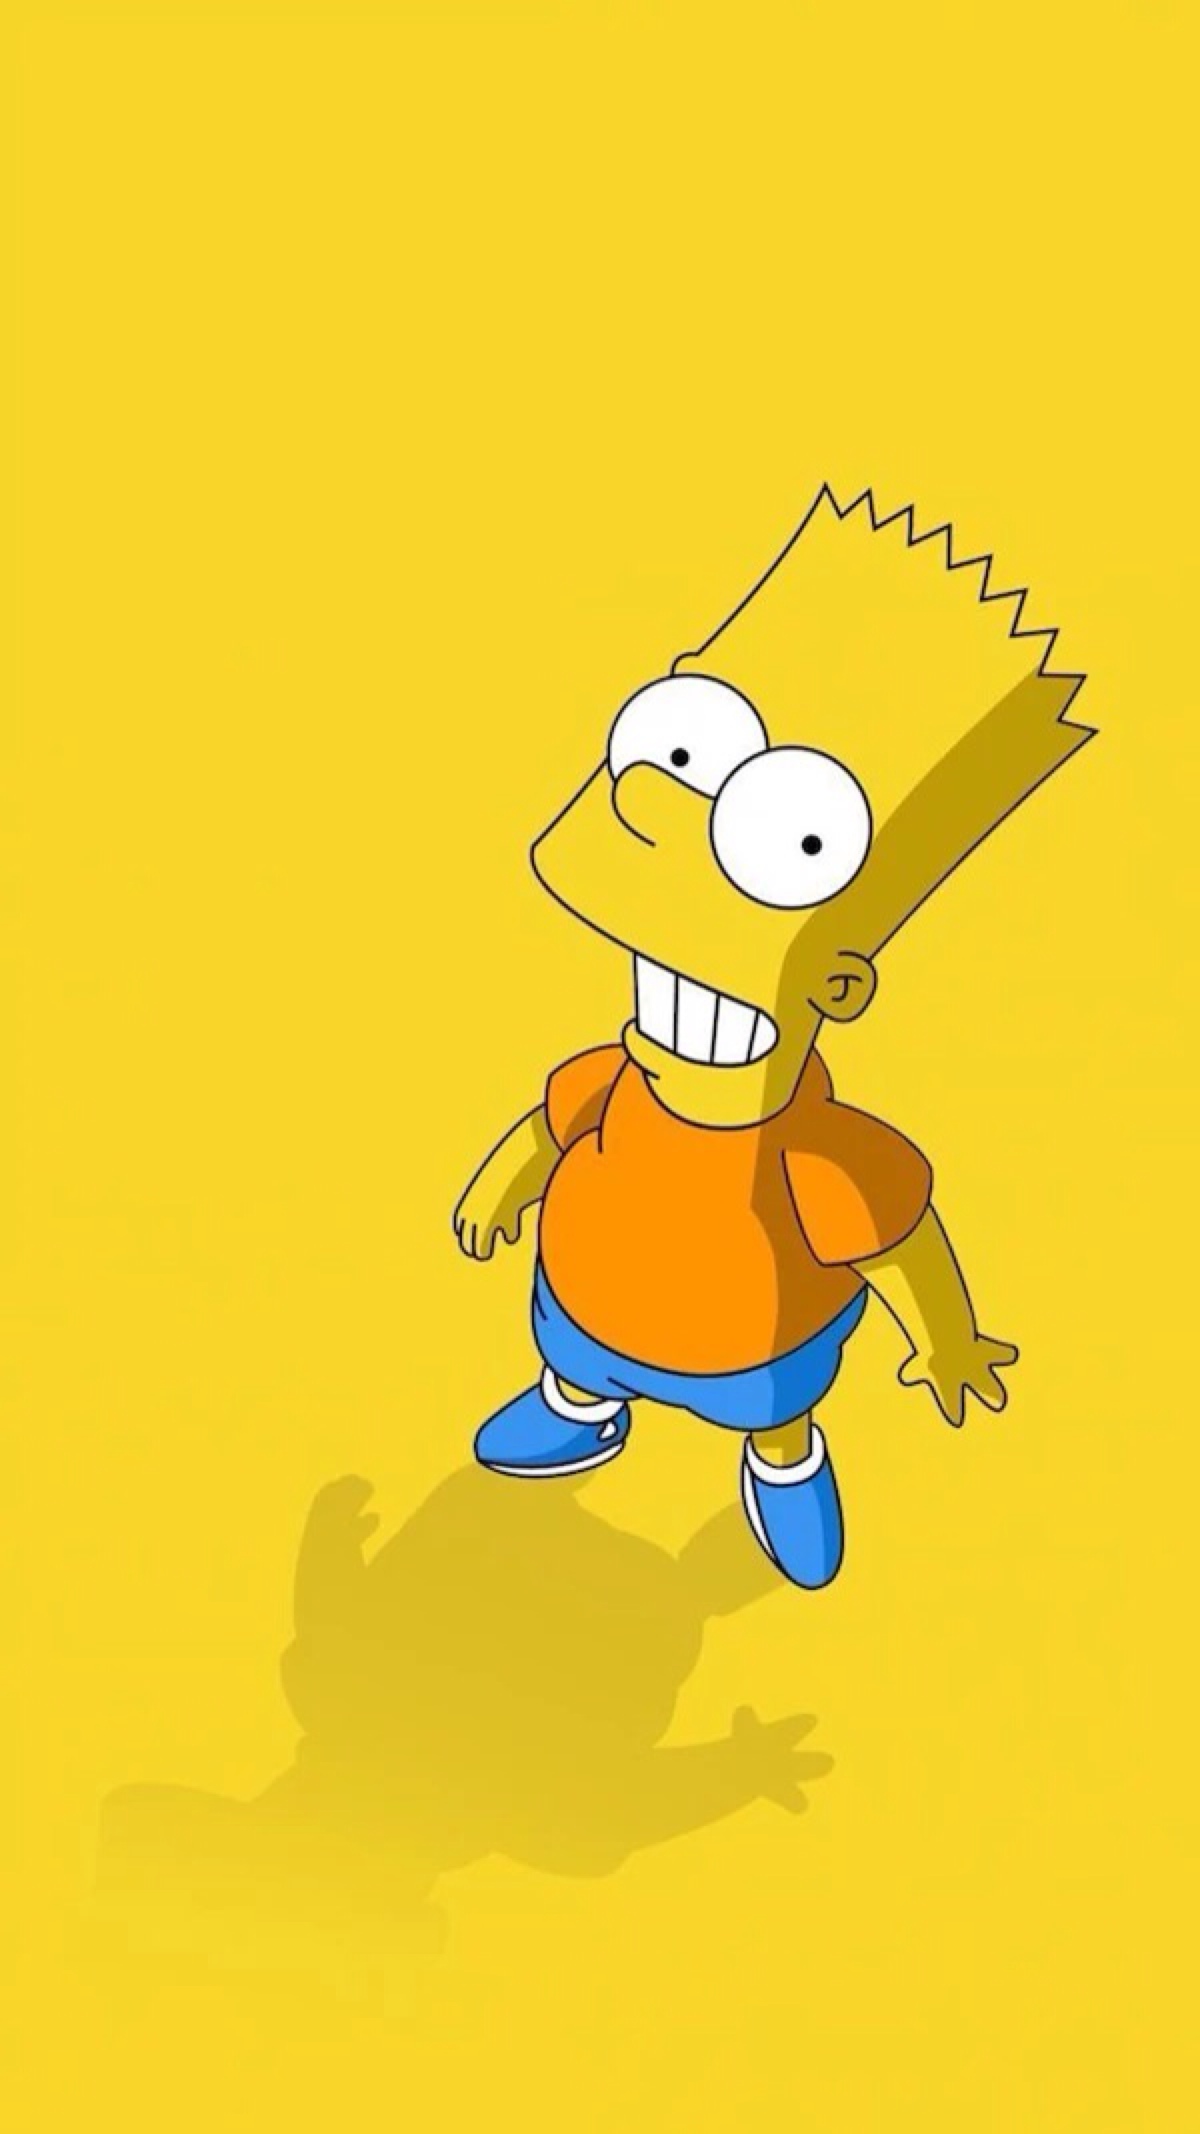 辛普森一家 The Simpsons 英语情景动画片 1-30季全647集中英文字幕百度网盘下载 - 嘟小猪资源